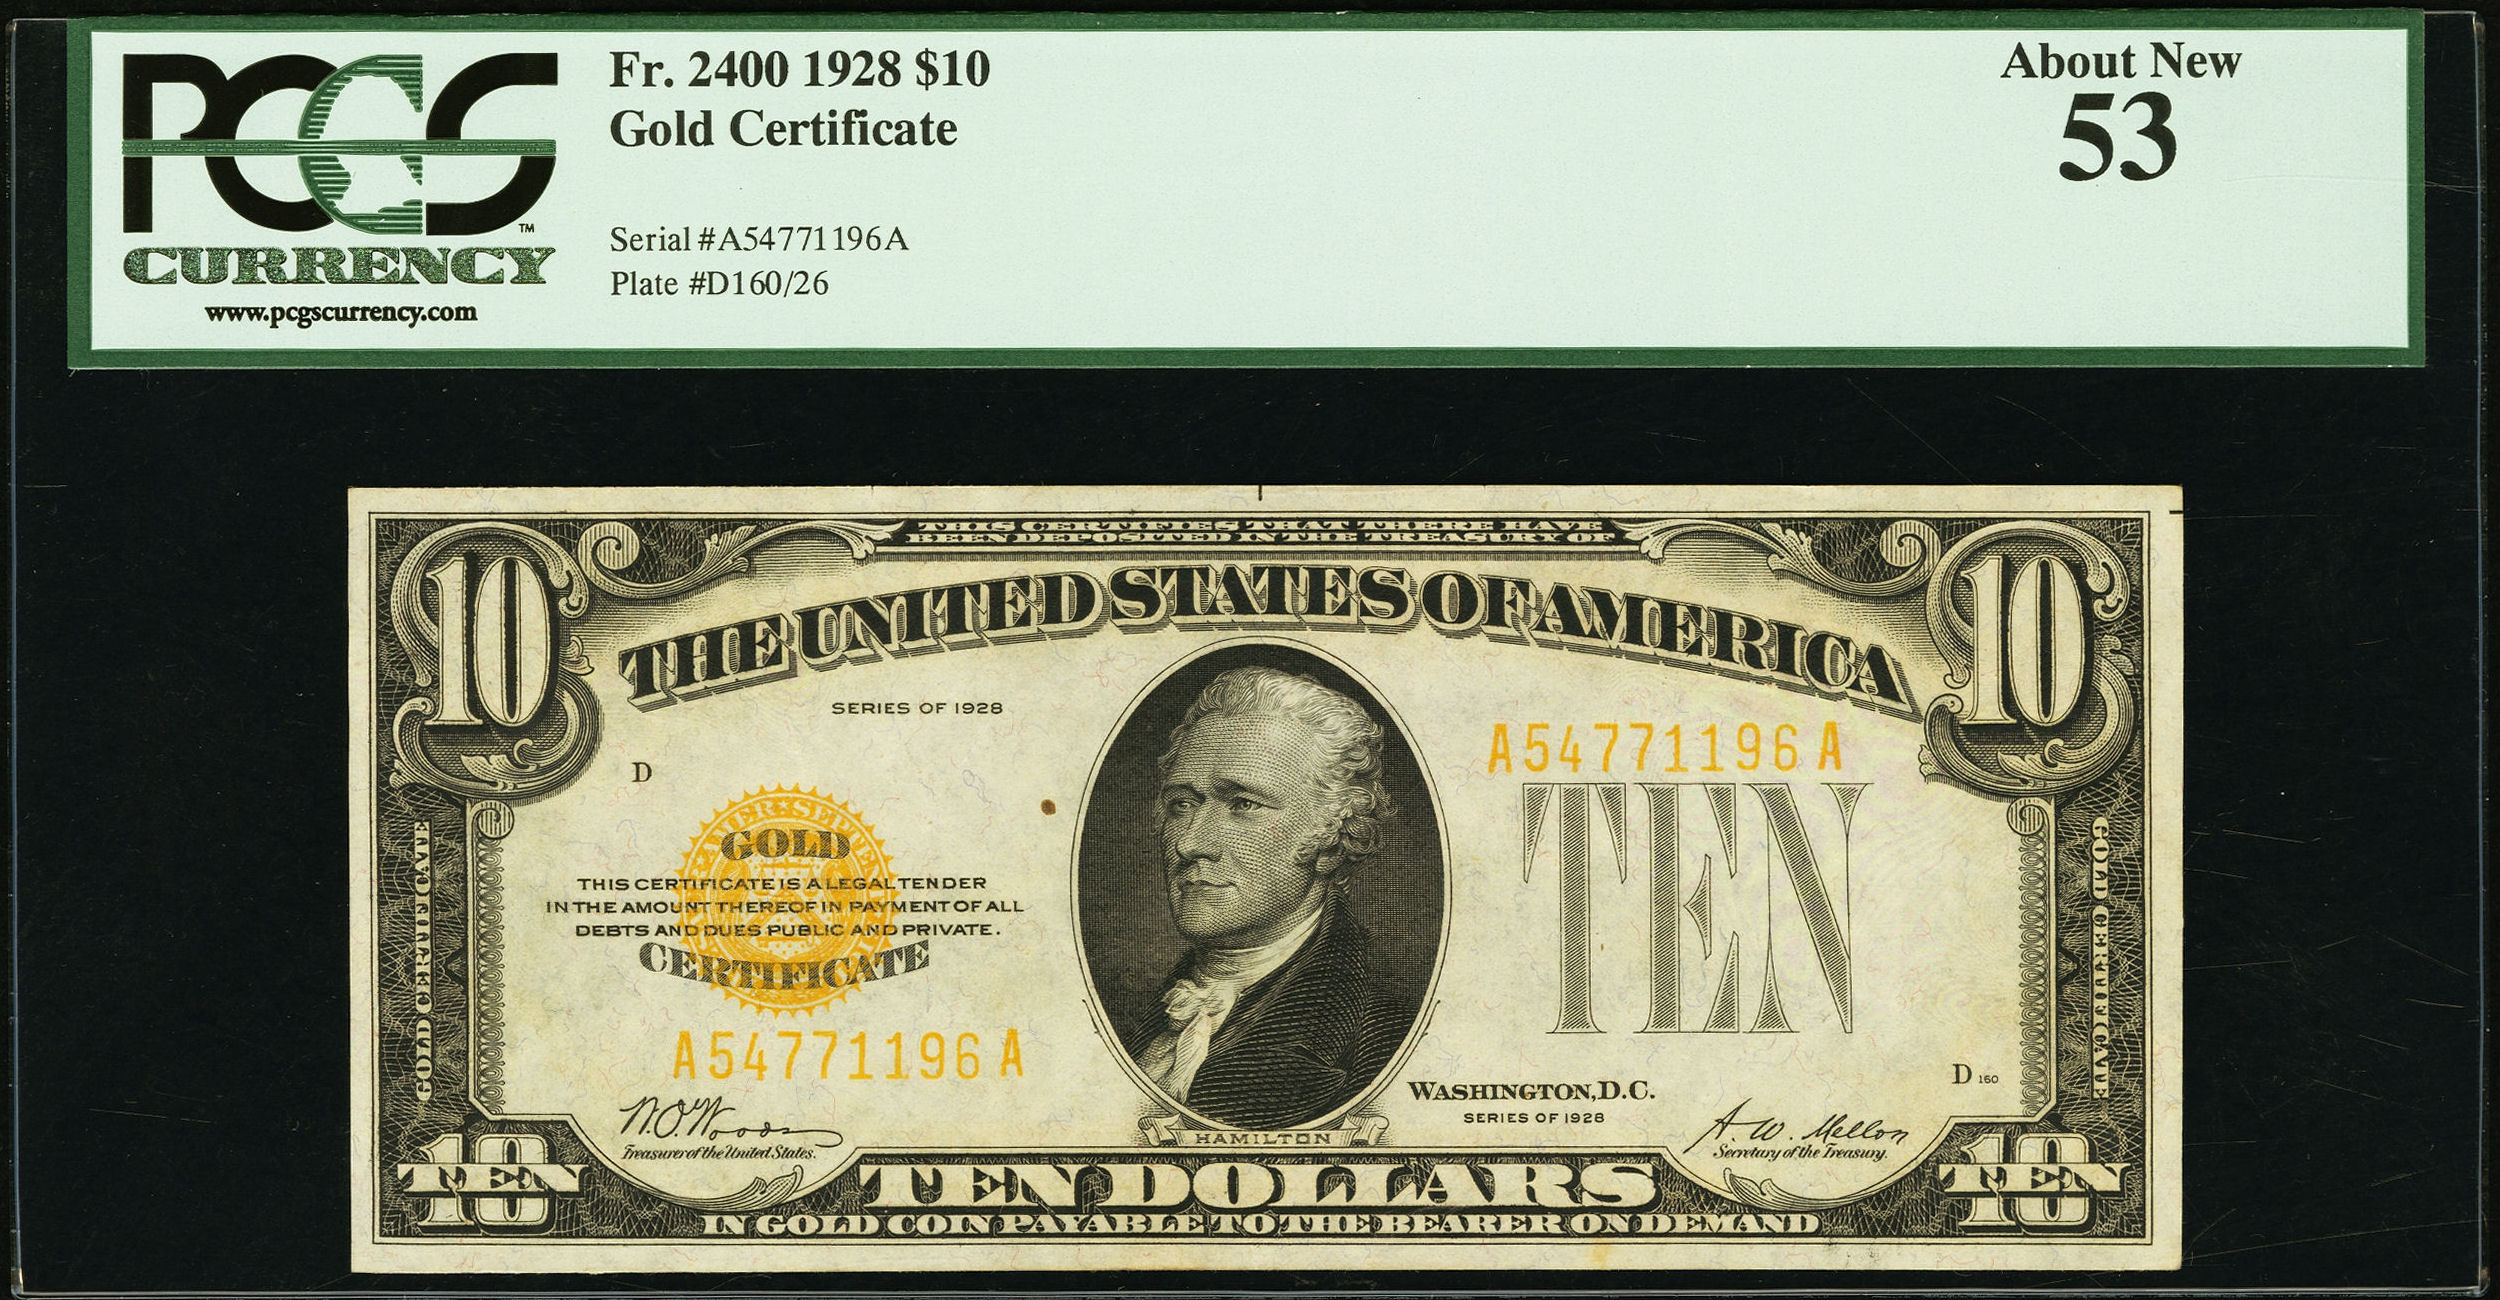 Доллар новые и старые купюры. 100 Долларов США 1928 года-. Старые 100 долларовые купюры. 100 Долларов 1950 года. Доллары старого образца.